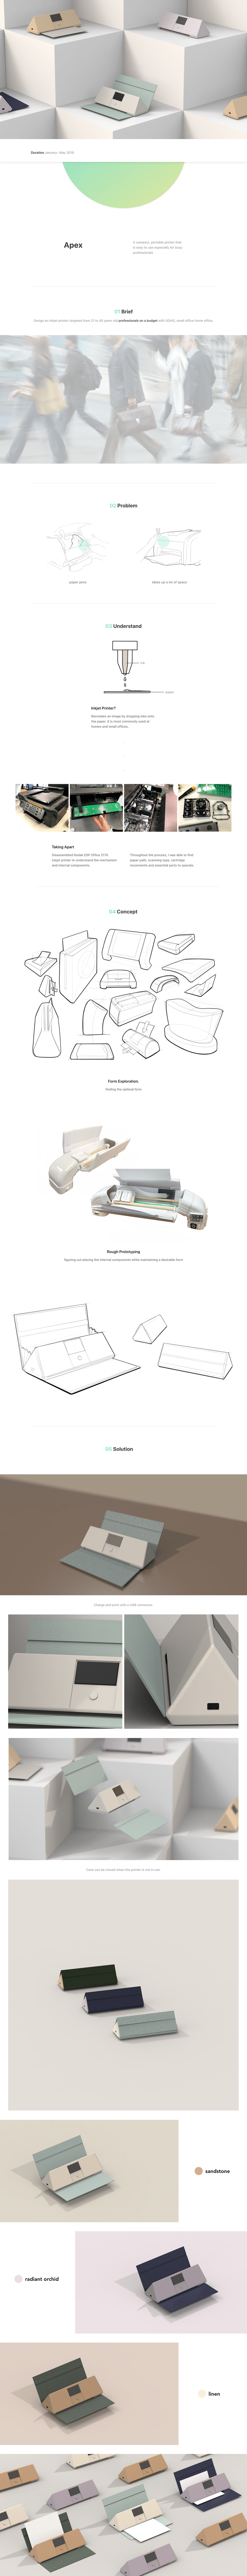 industrial design  printer design product design  smart design smart product